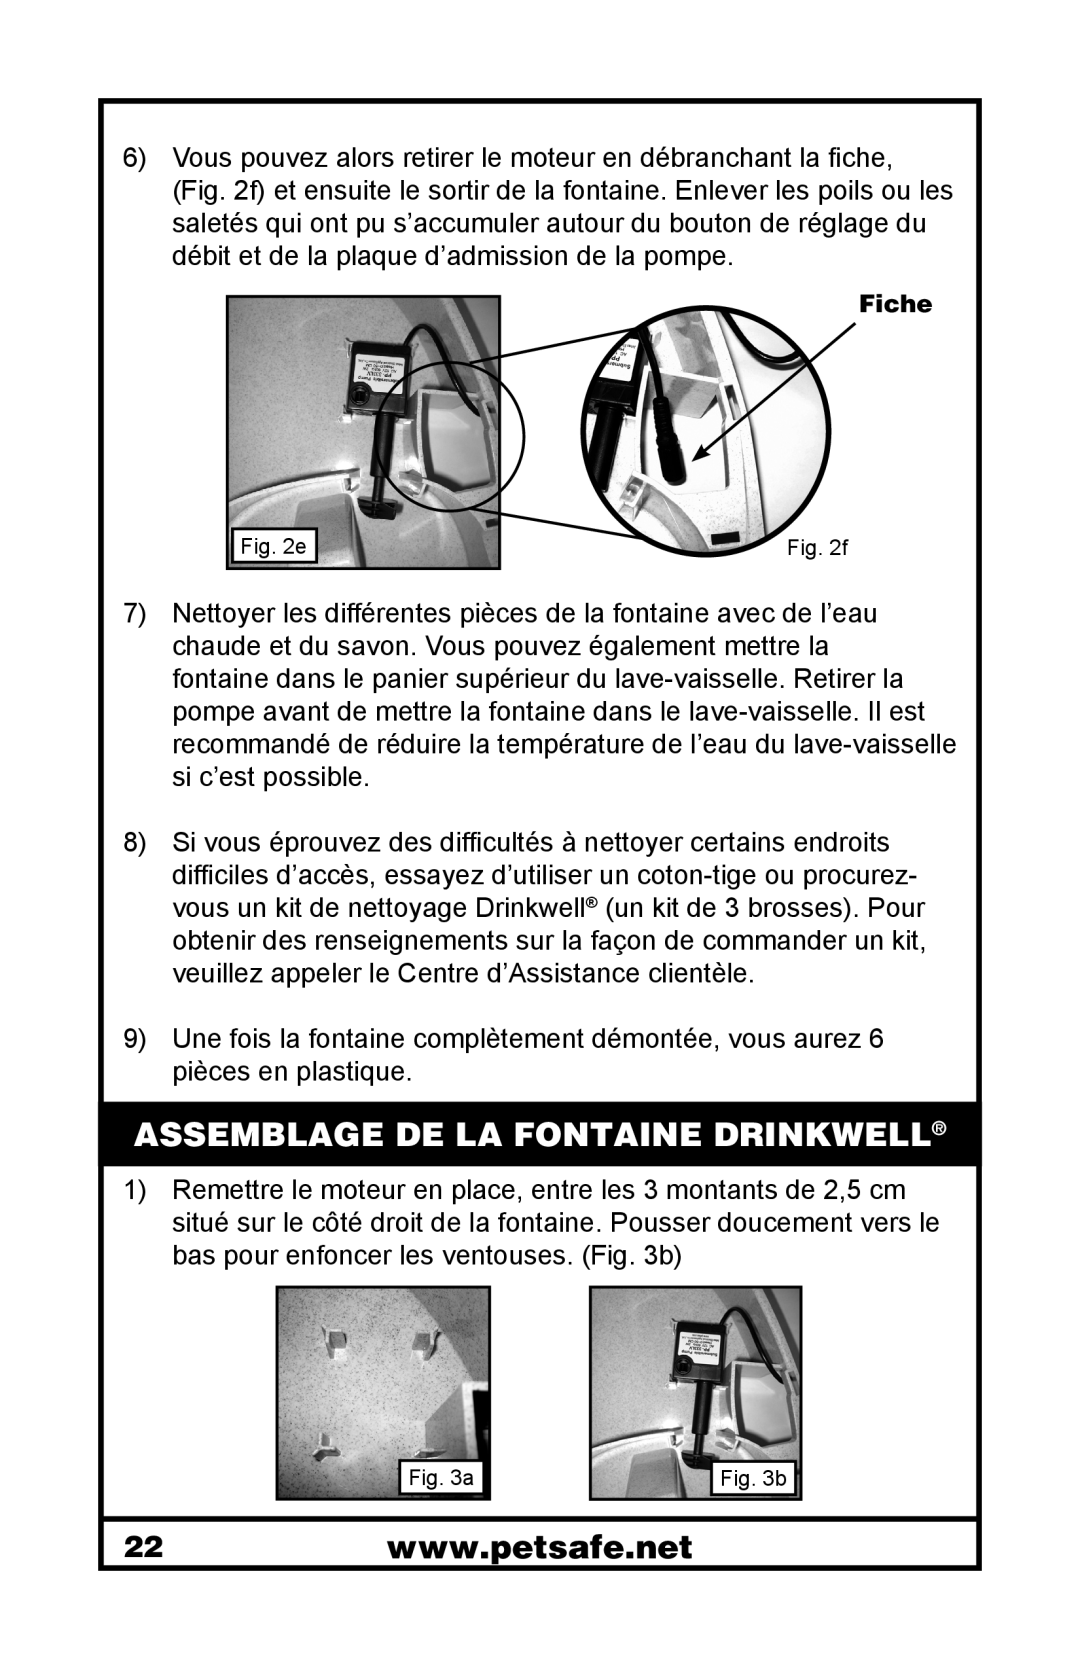 Petsafe 400-1255-19 manuel dutilisation Assemblage De La Fontaine Drinkwell 